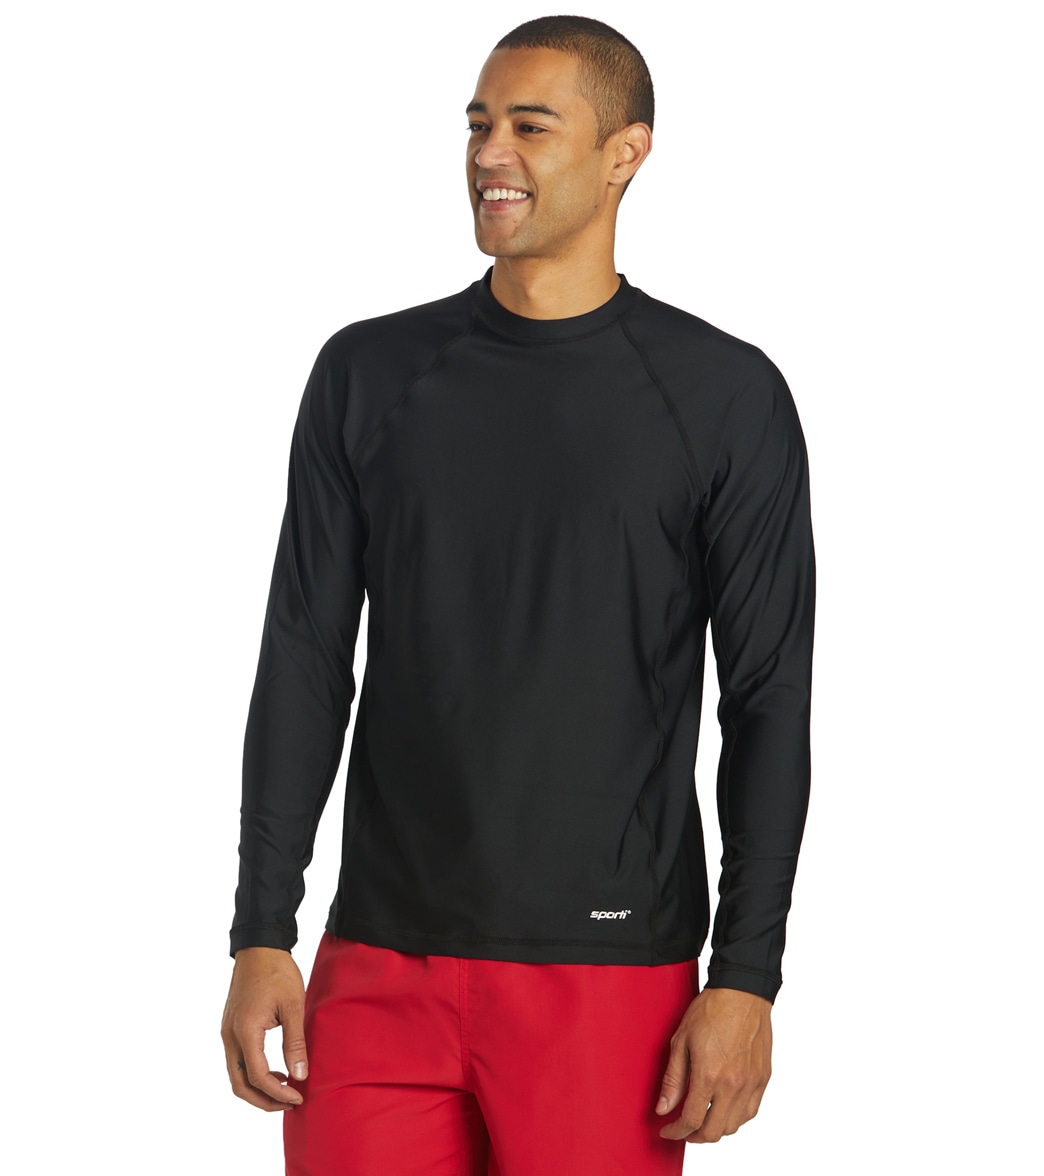 Sporti Men's Long Sleeve Shirt Upf 50+ Comfort Fit Rashguard - Black Medium - Swimoutlet.com